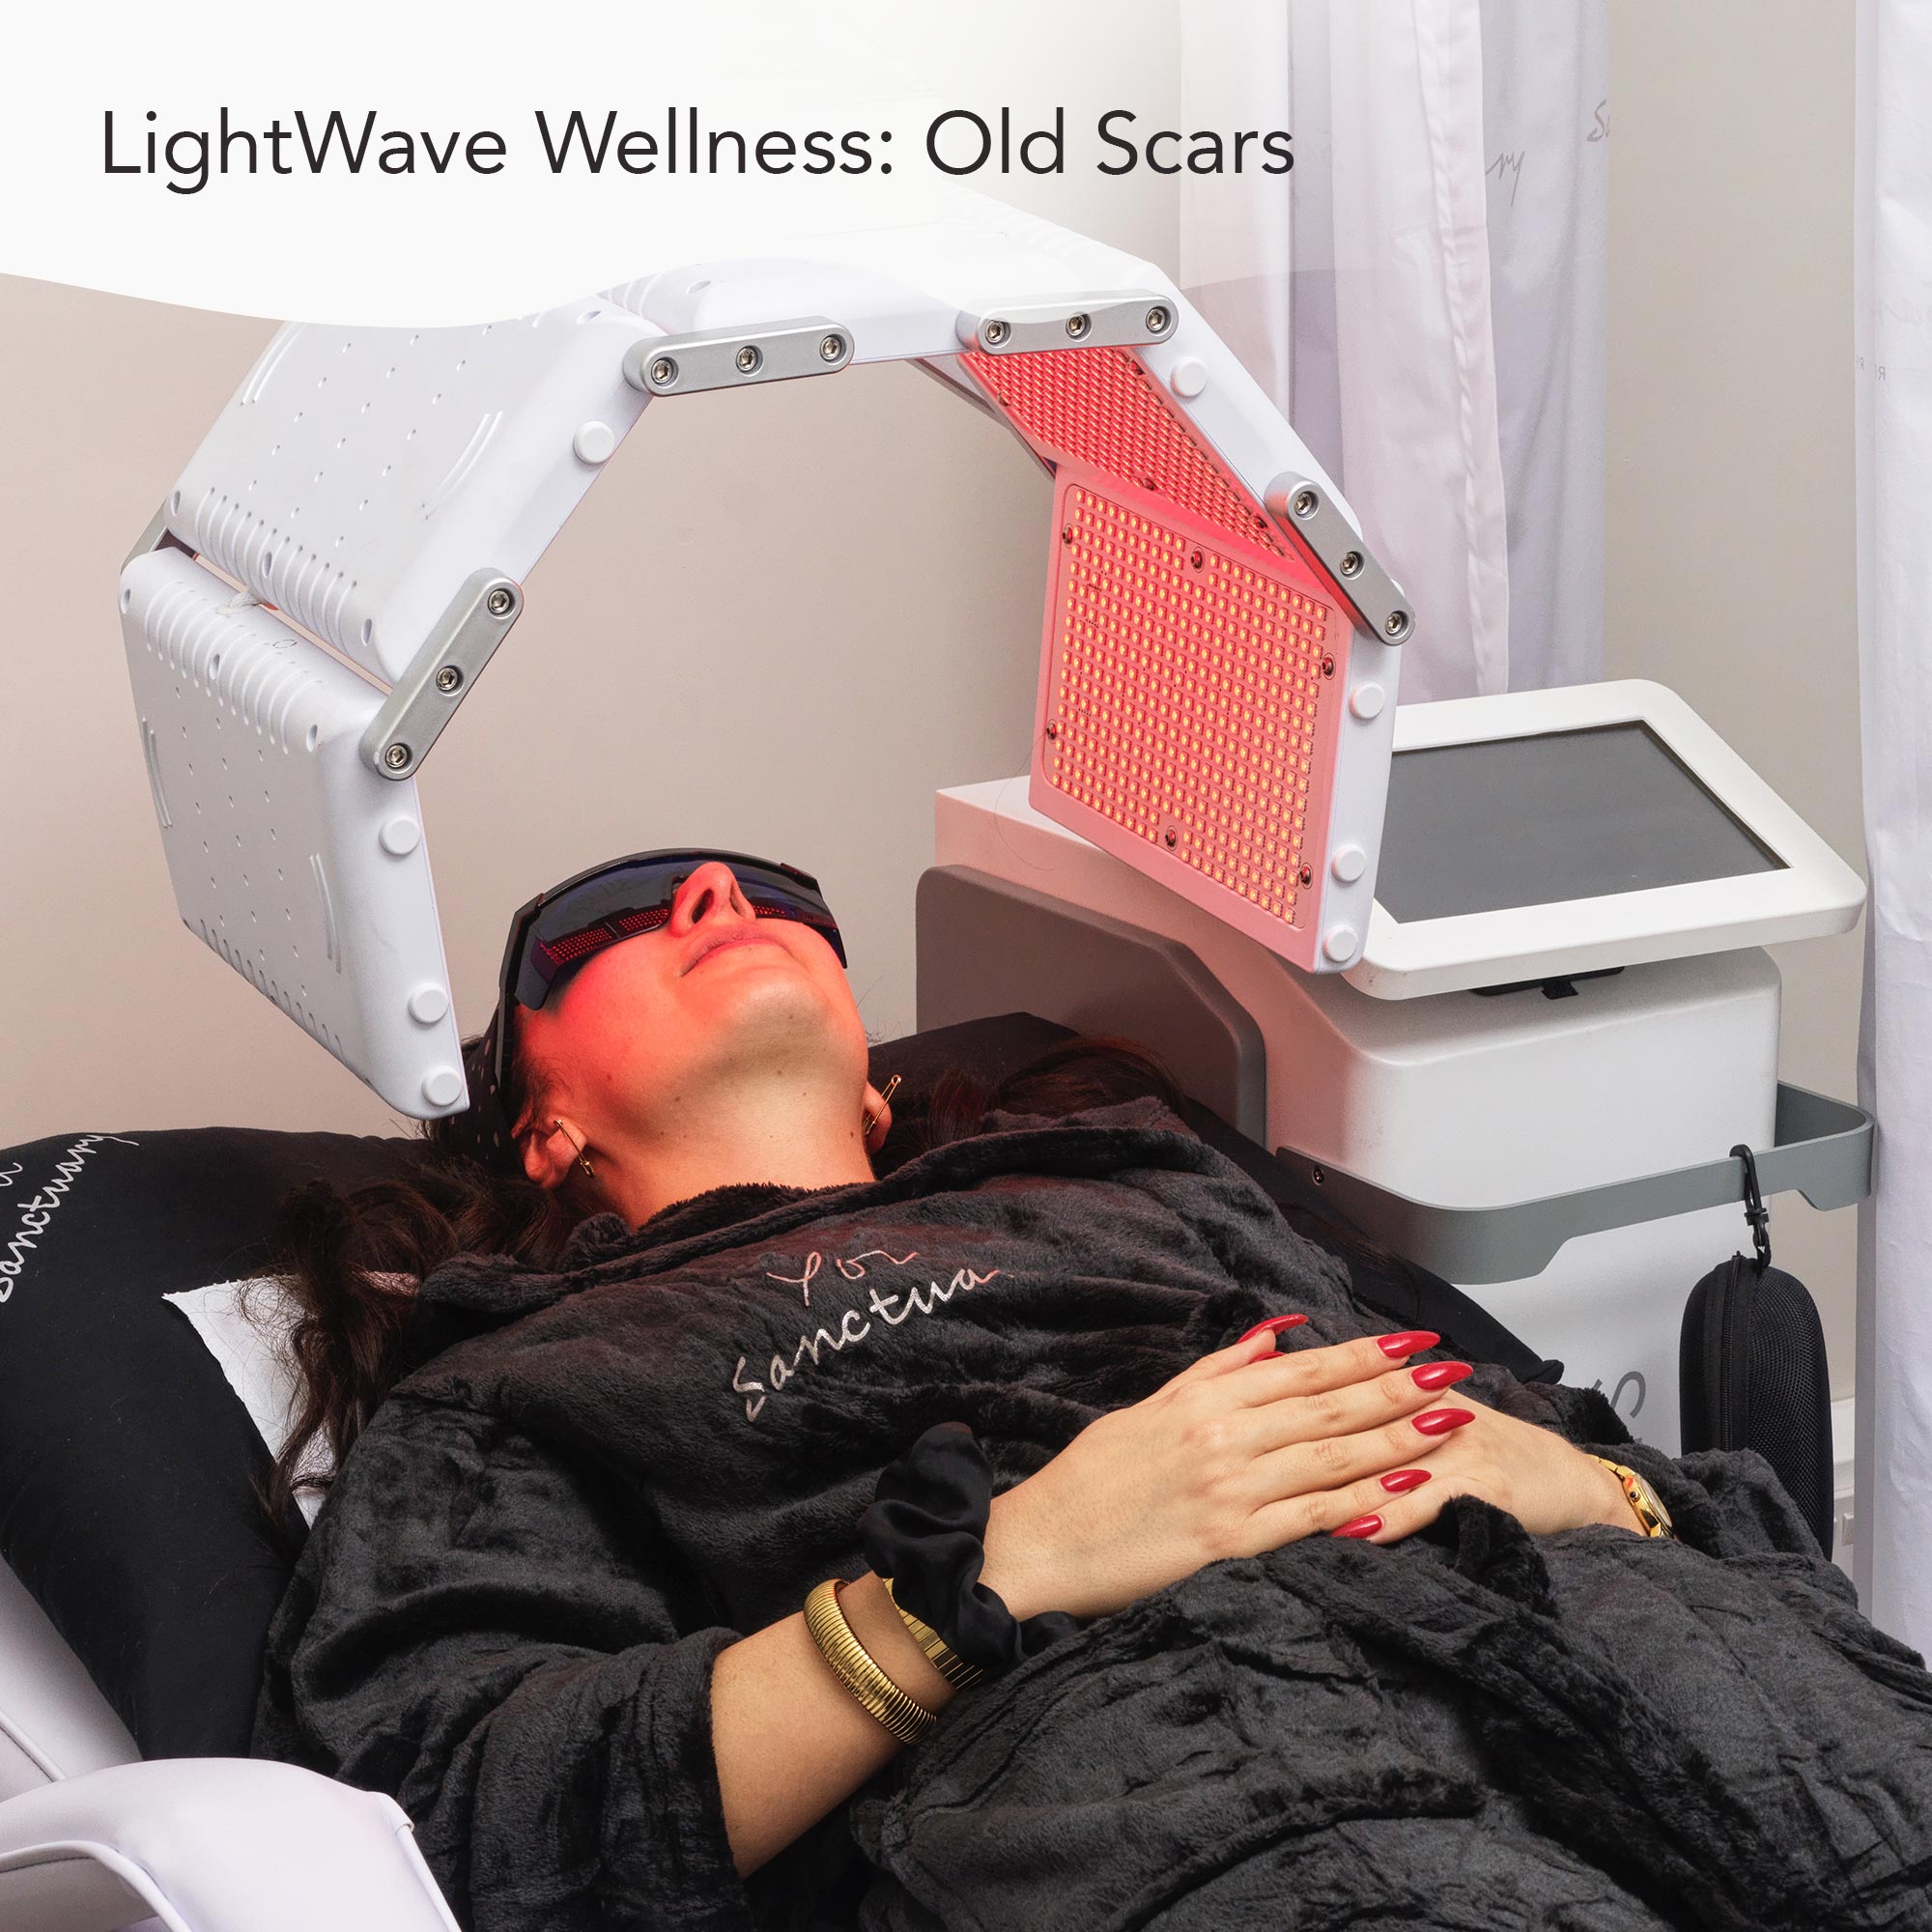 LightWave Wellness: Old Scars